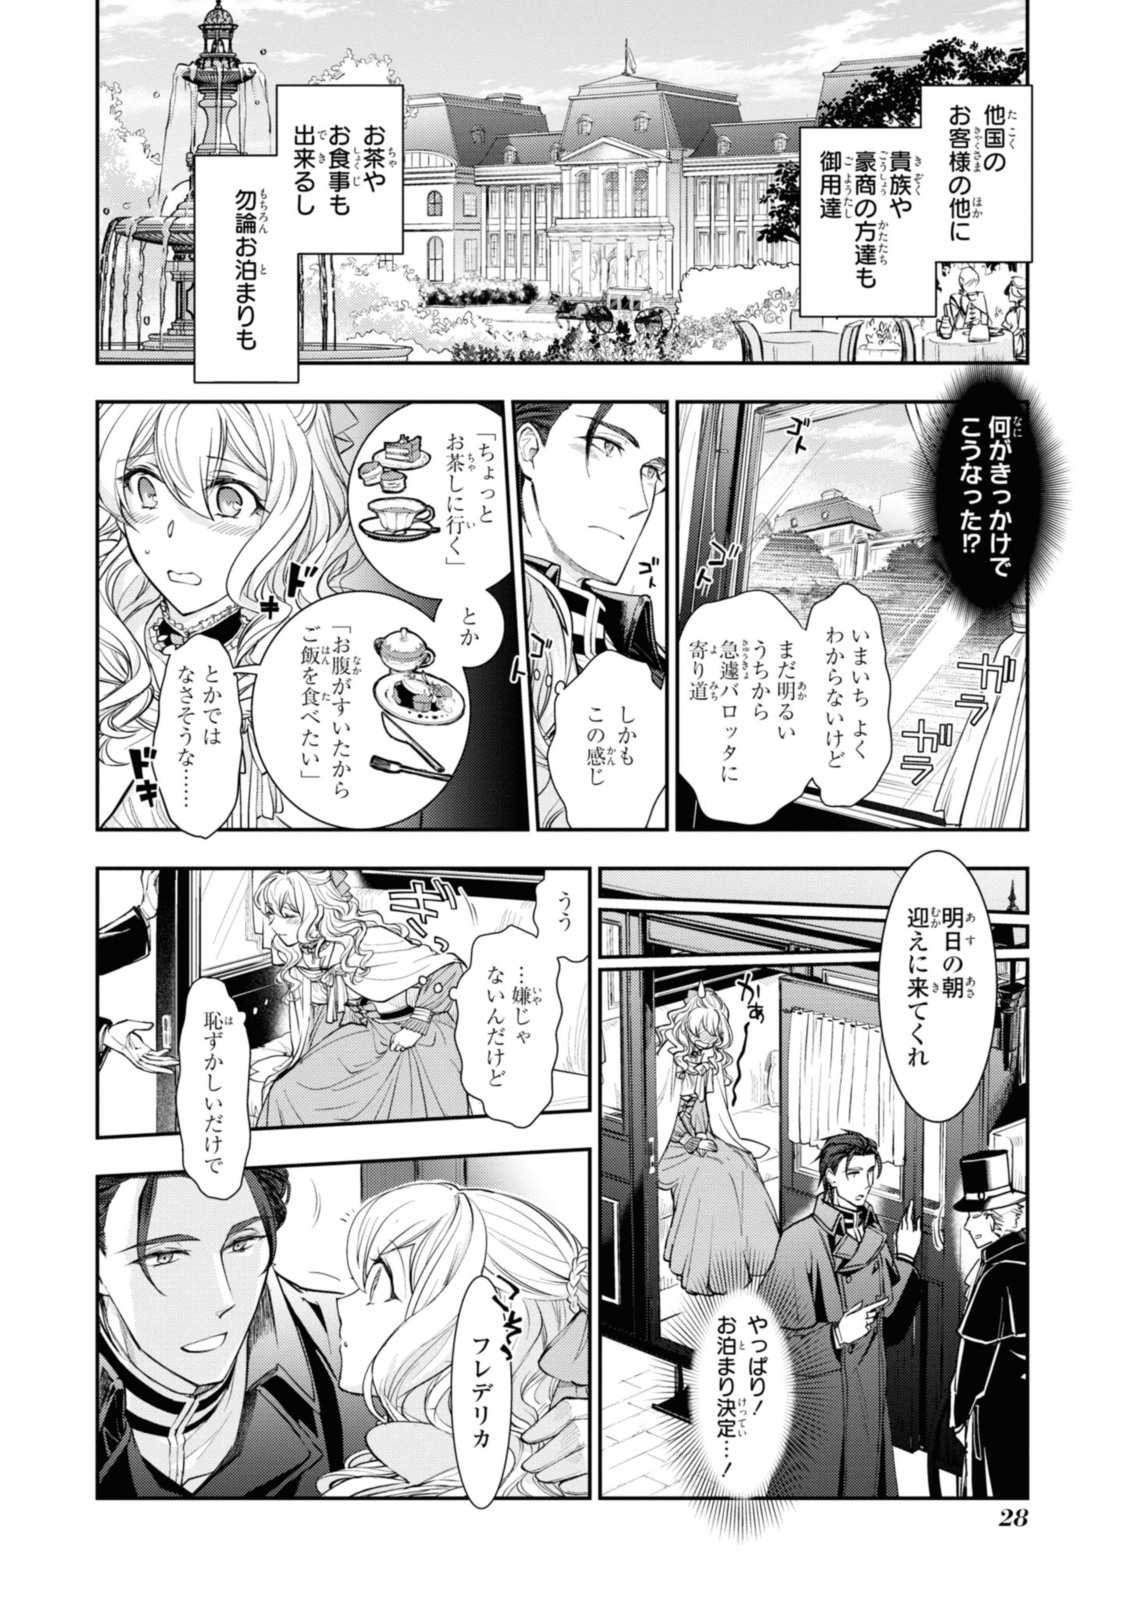 Sakkon no Cinderella wa Kutsu wo Otosanai. - Chapter 11.3 - Page 2